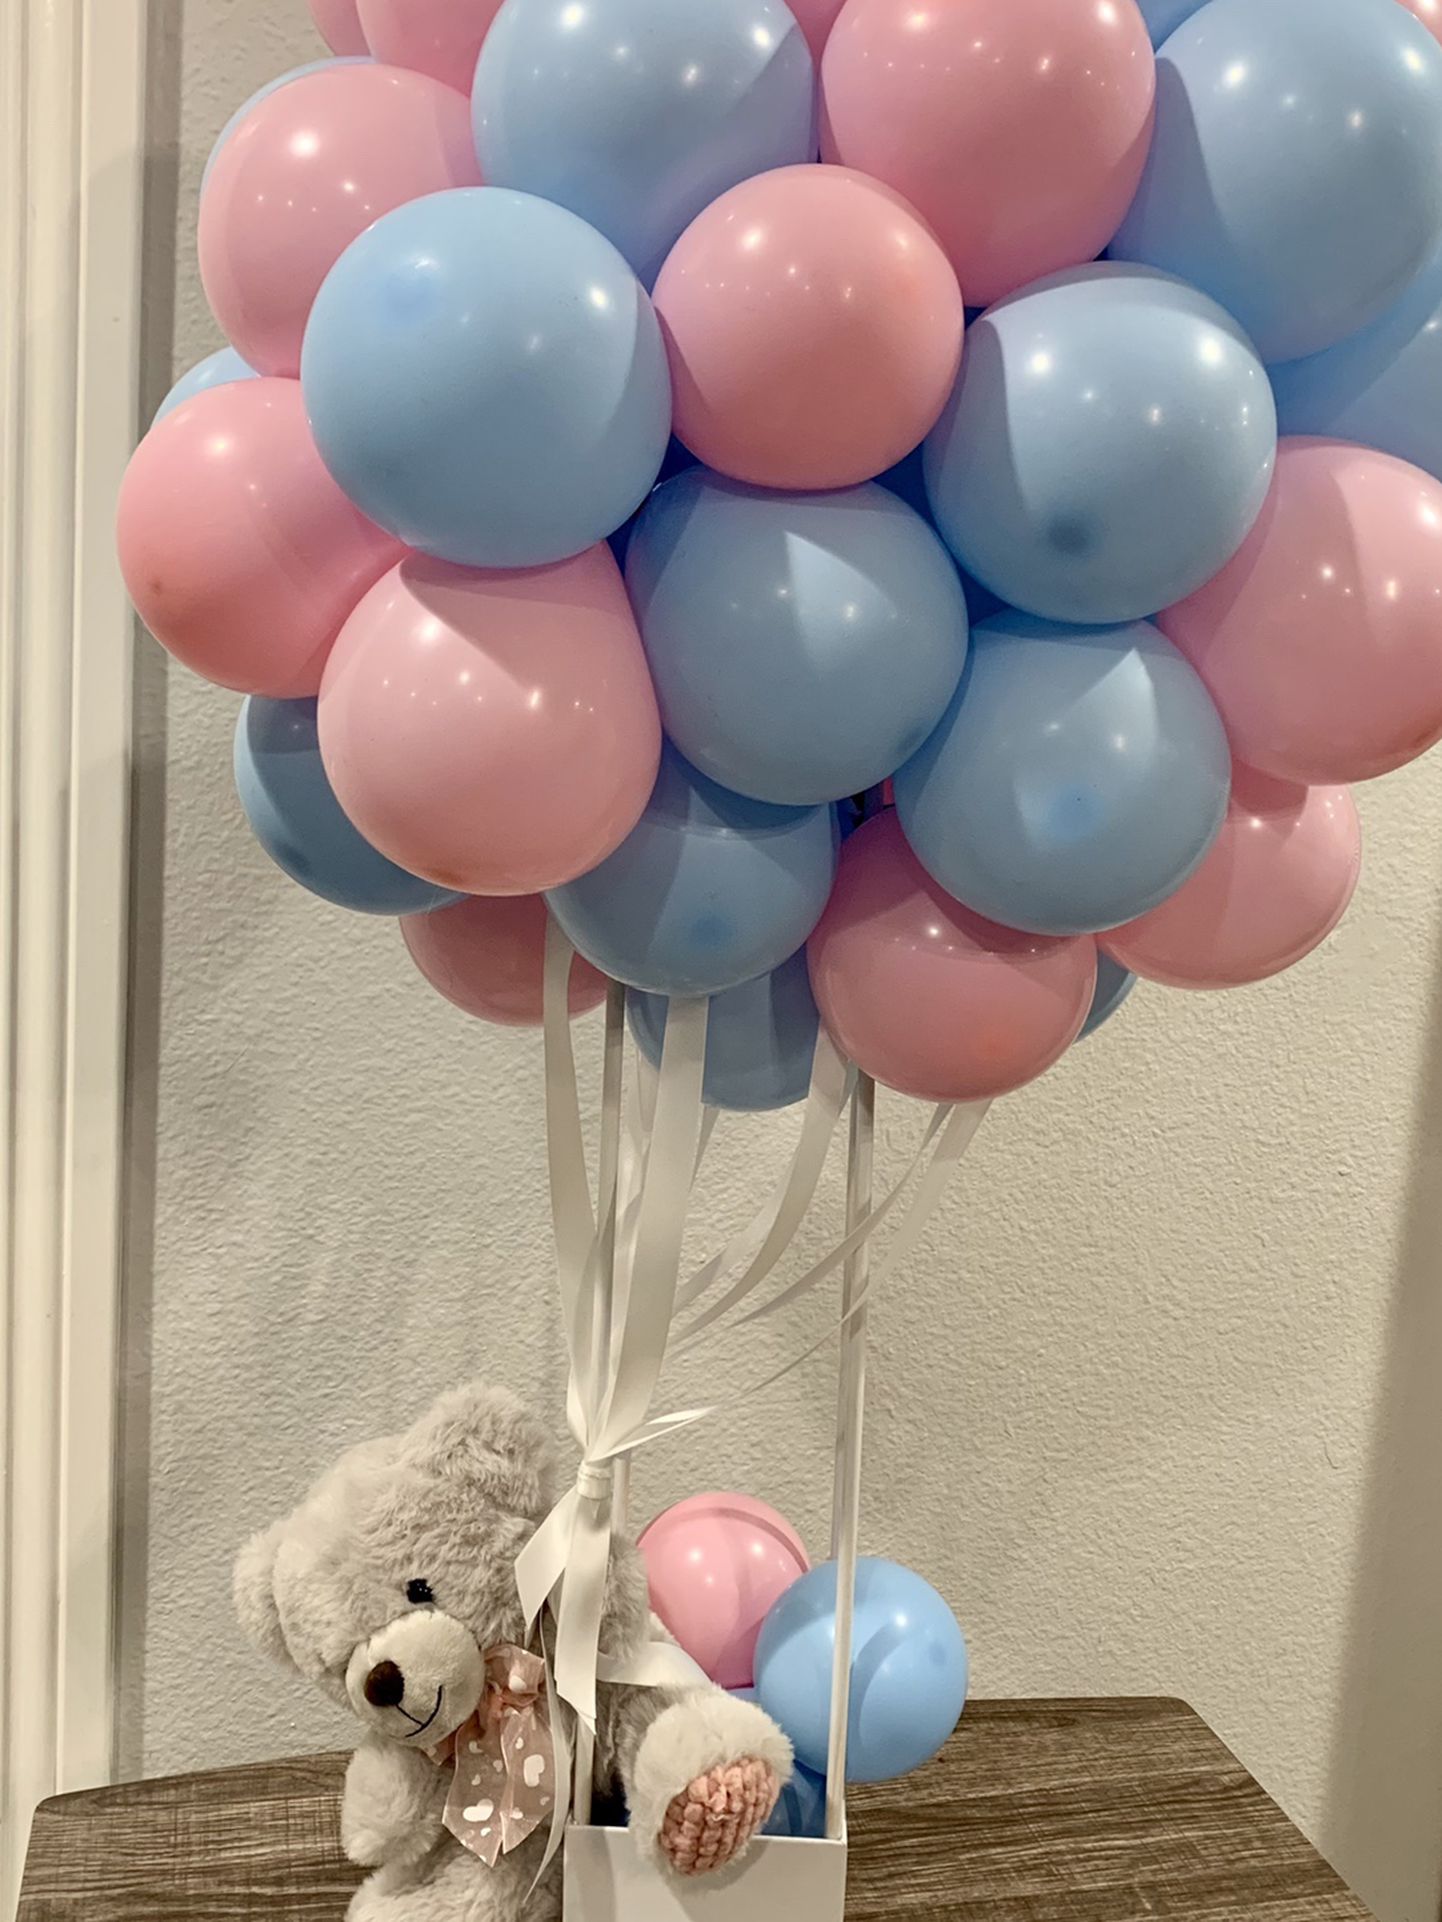 Teddy Hot Air Balloon Arrangement 🐻